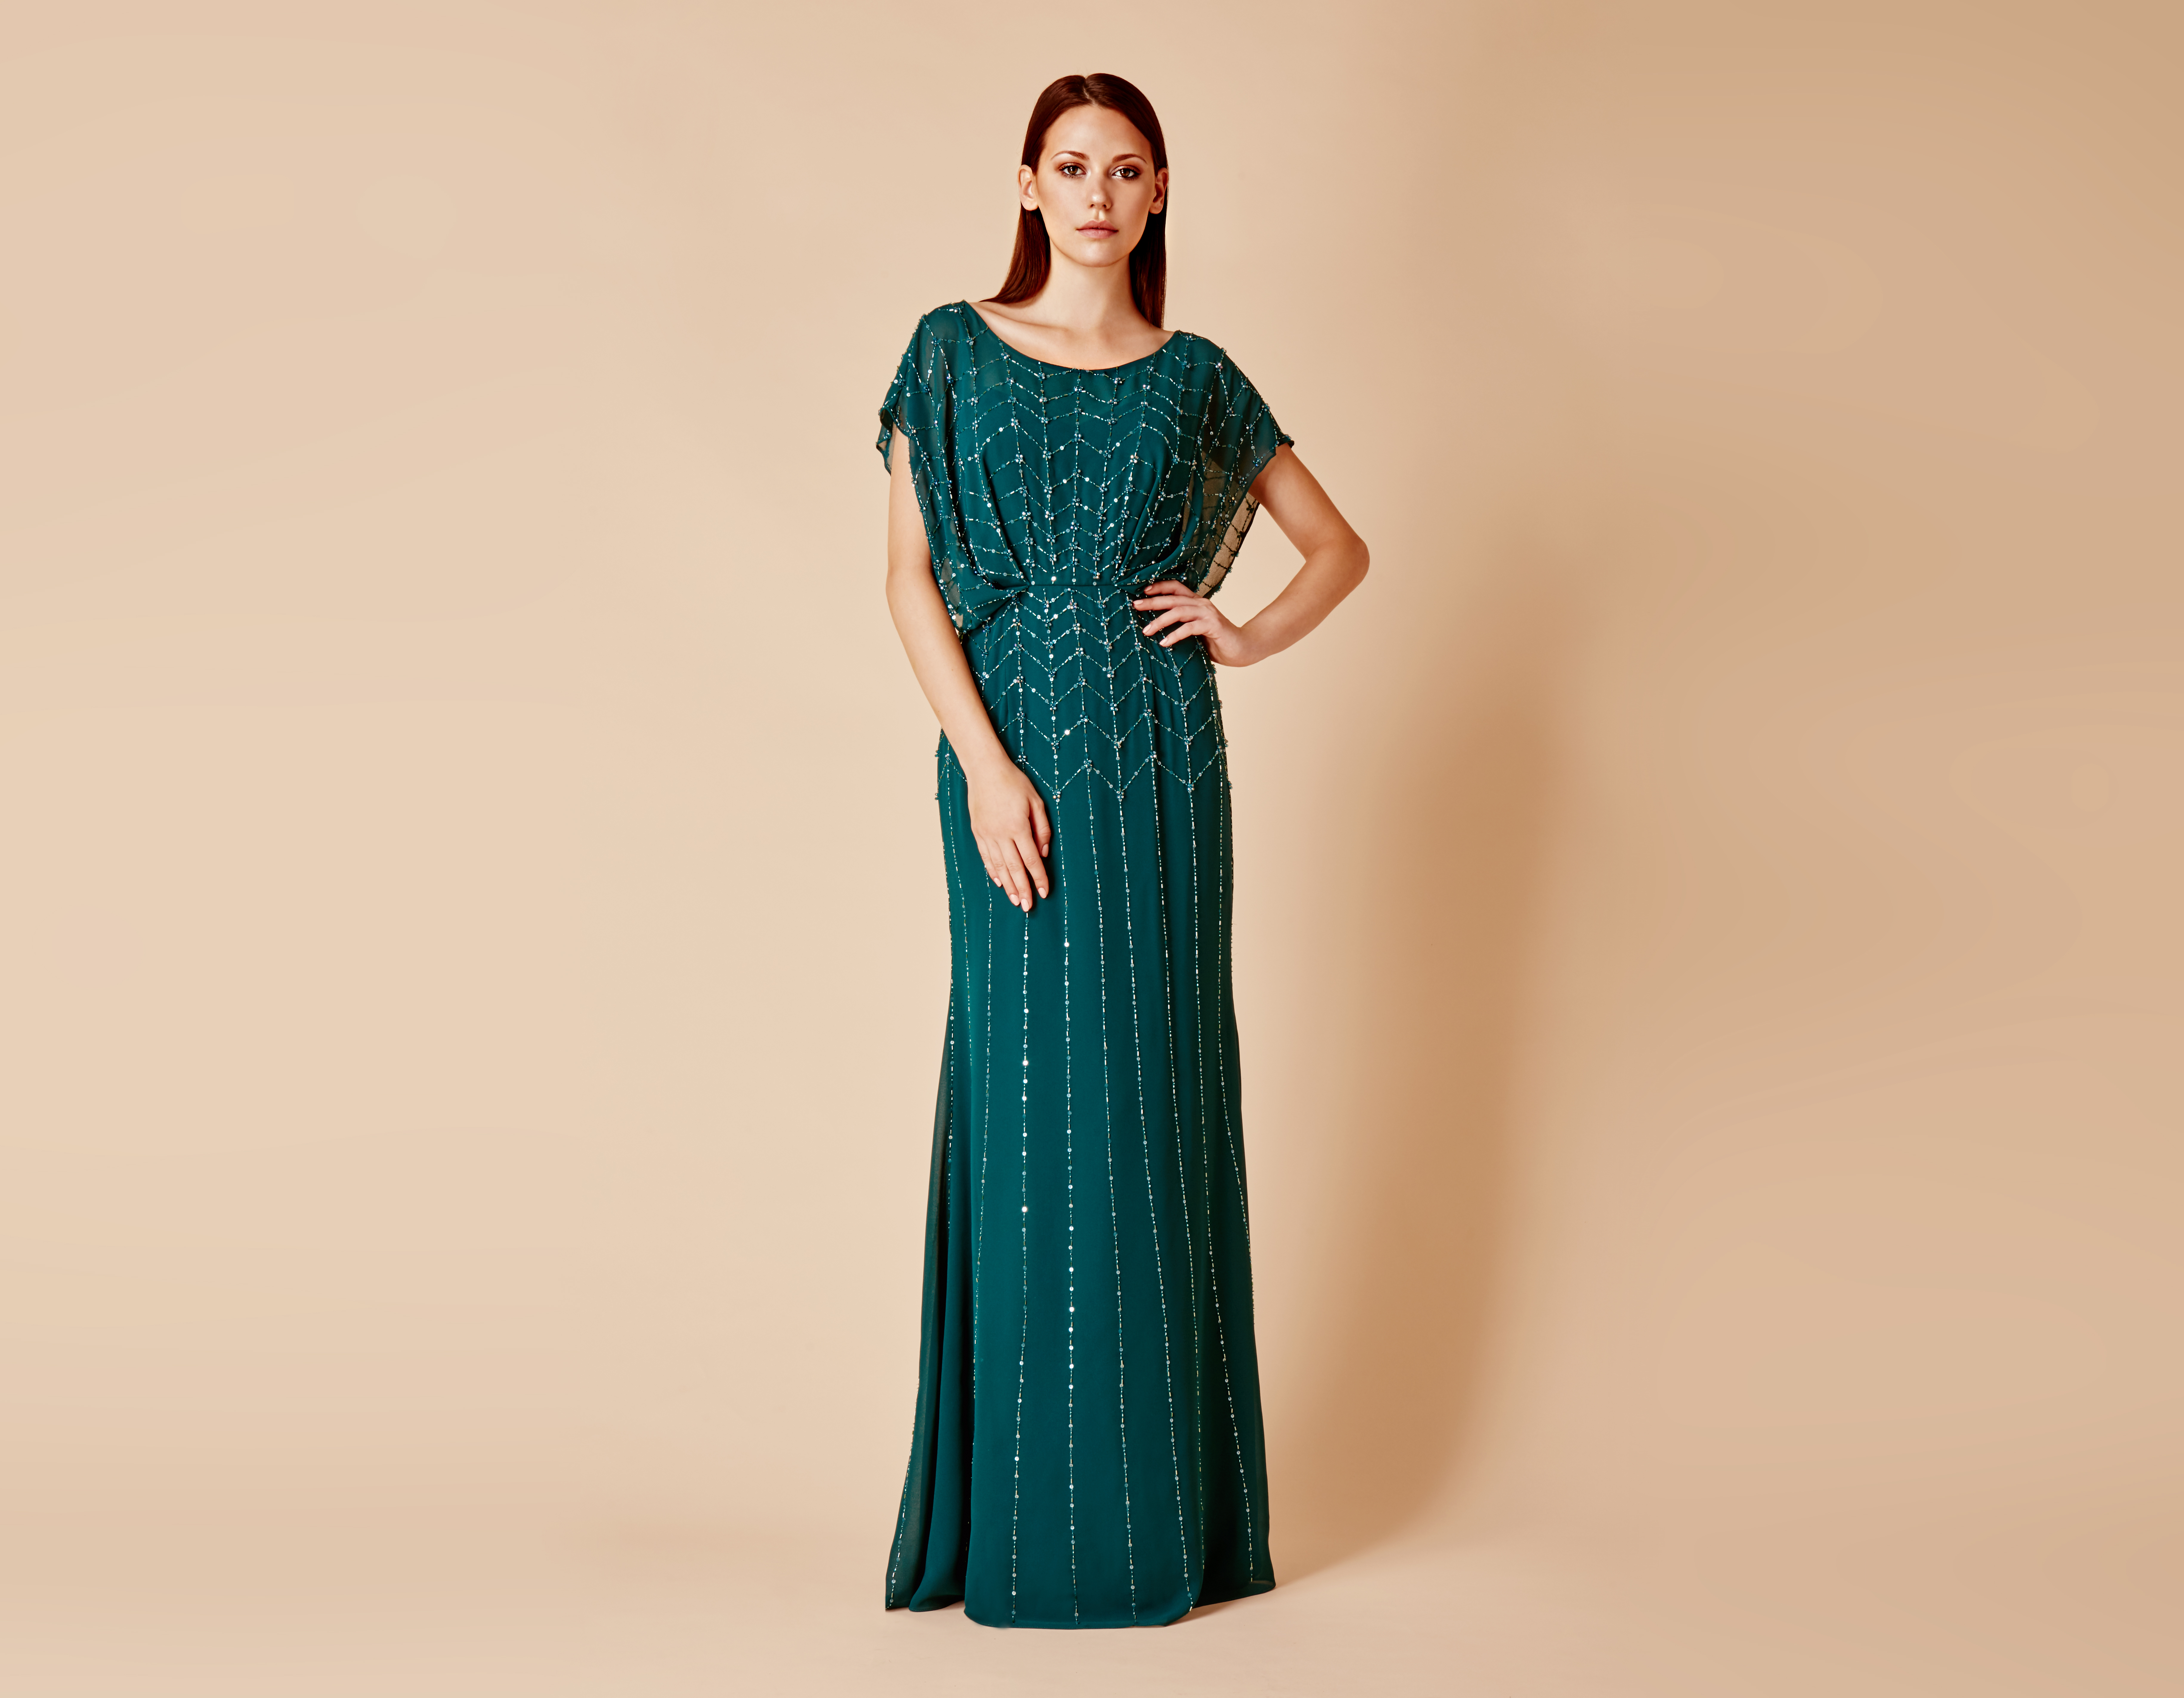 Daymor Couture 665 Dress - MadameBridal.com